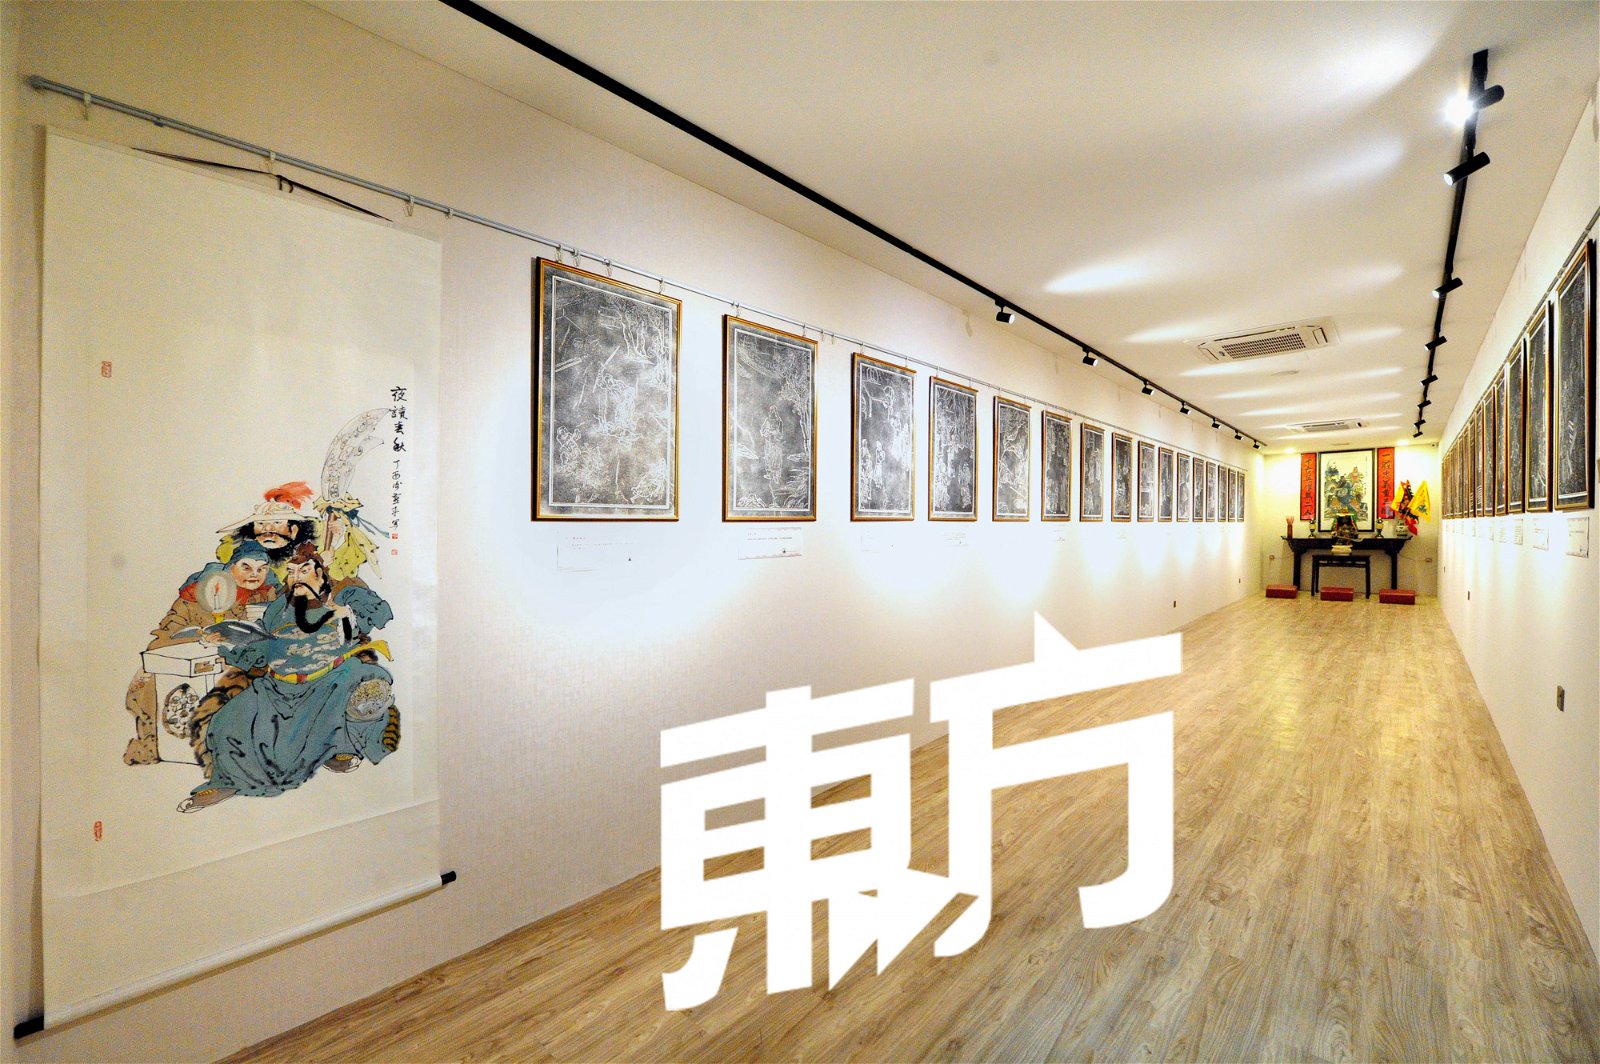 华容道是关公文化馆的小型展览厅，将不定时更换关公文化相关的展览作品。